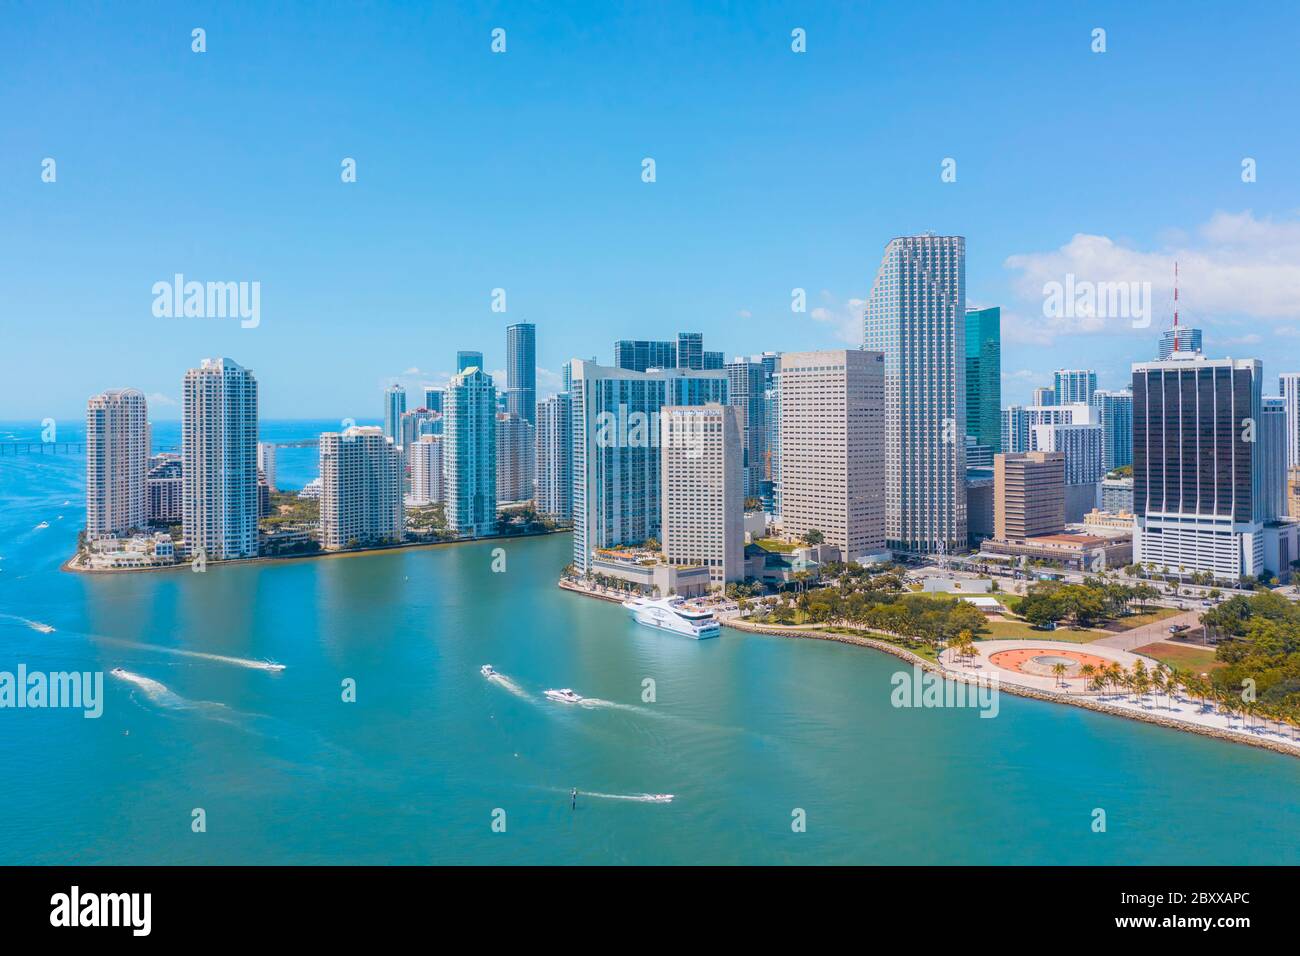 Le centre-ville de Miami Skyline Banque D'Images